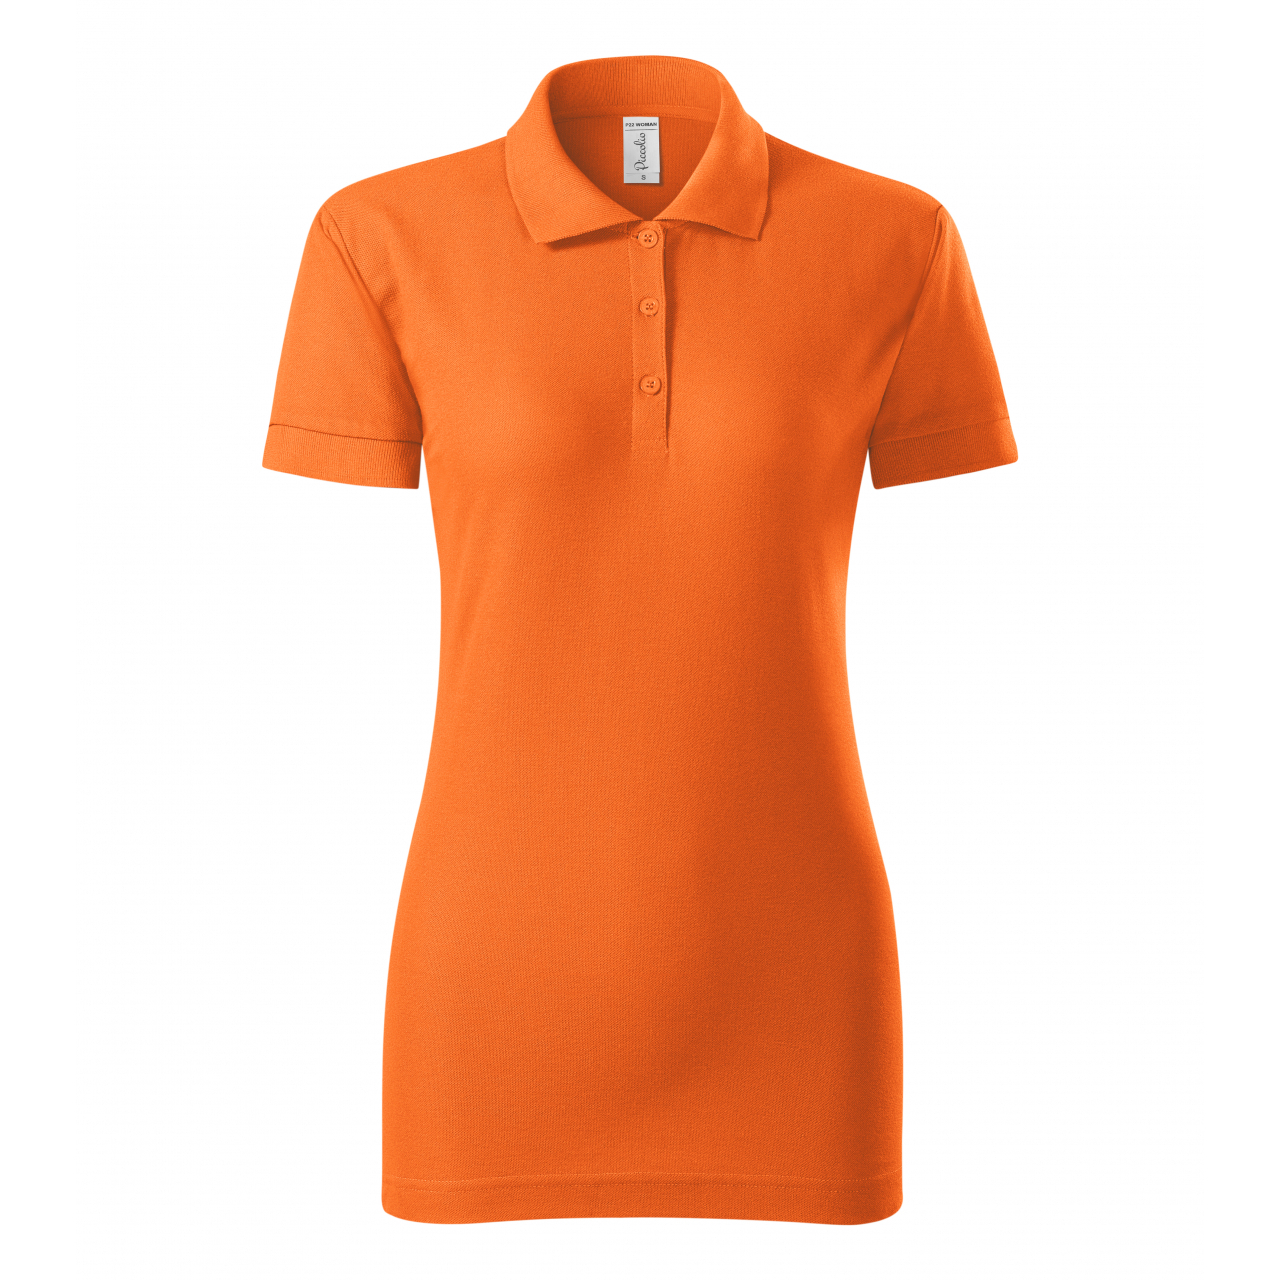 Polokošile dámská Piccolio Joy - oranžová, XL